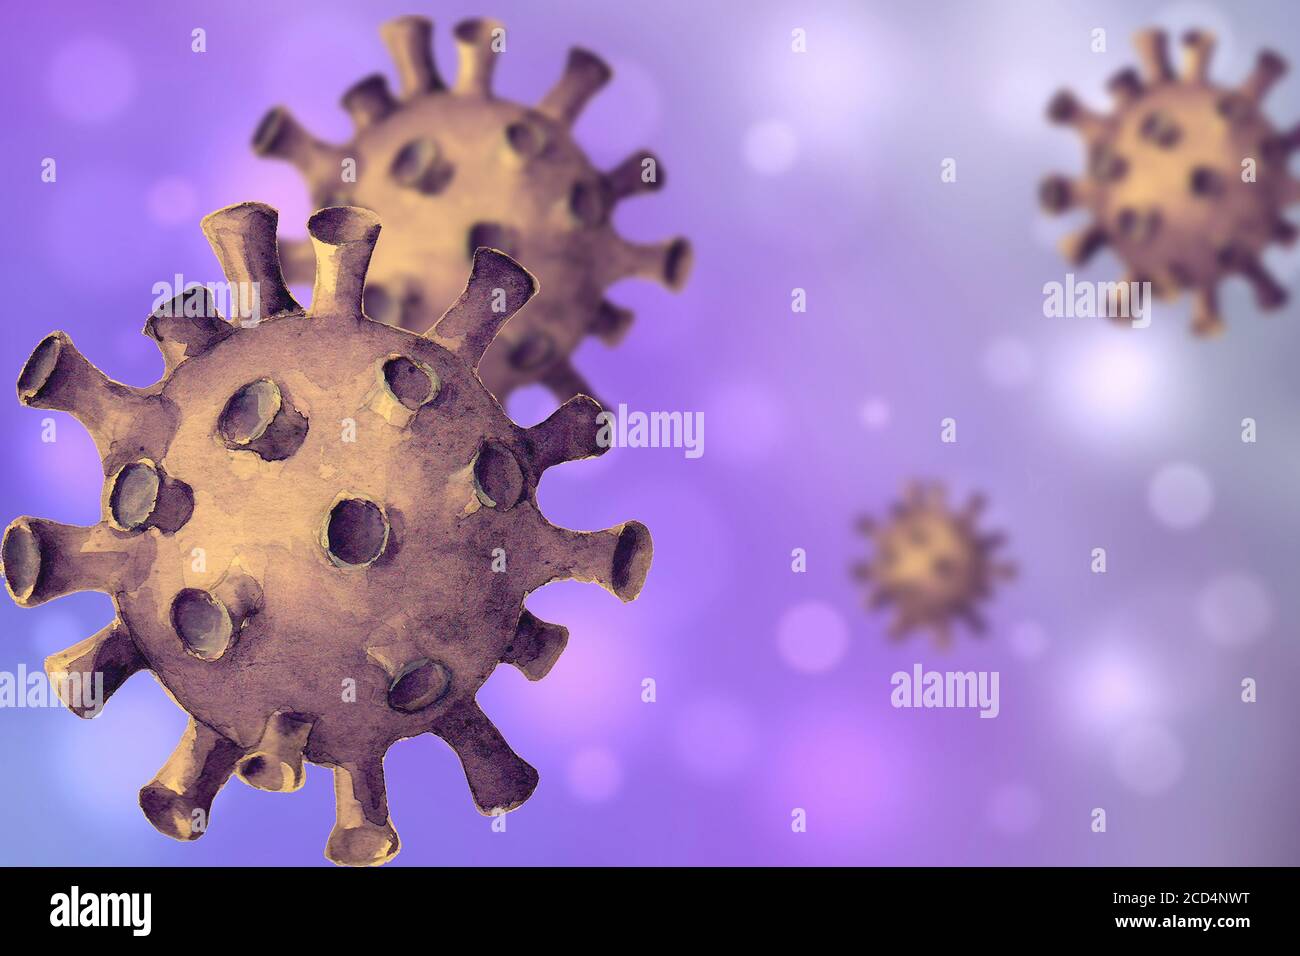 Virus purple background. Hand drawn 3d imitation Coronavirus 2019-nCoV cells. Dangerous respiratory corona virus from Wuhan, China. Print template for Stock Photo